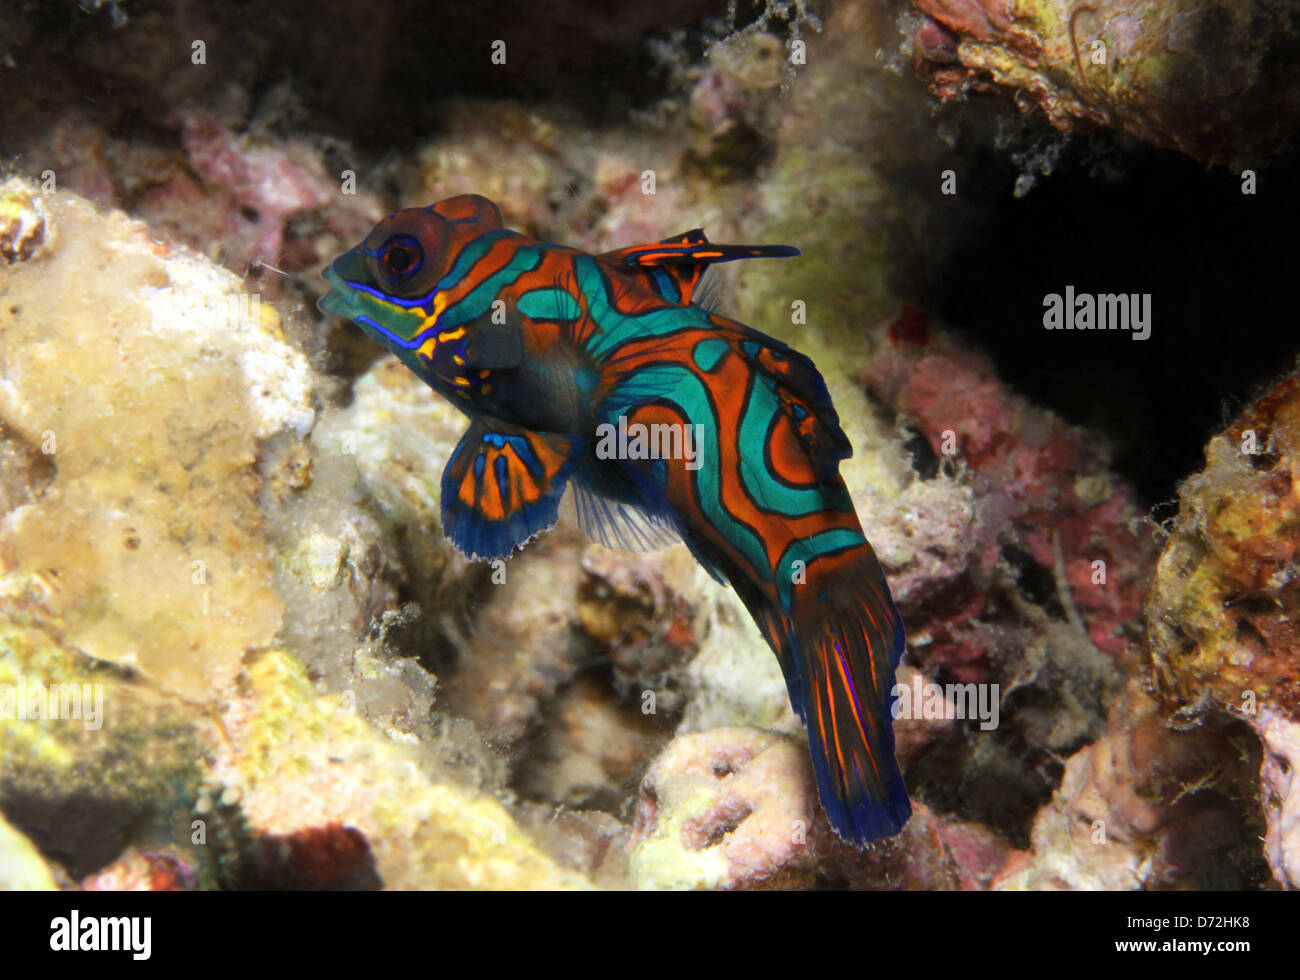 Mandarinfish (Synchiropus Splendidus), Lembeh Strait, Indonesia Stock Photo